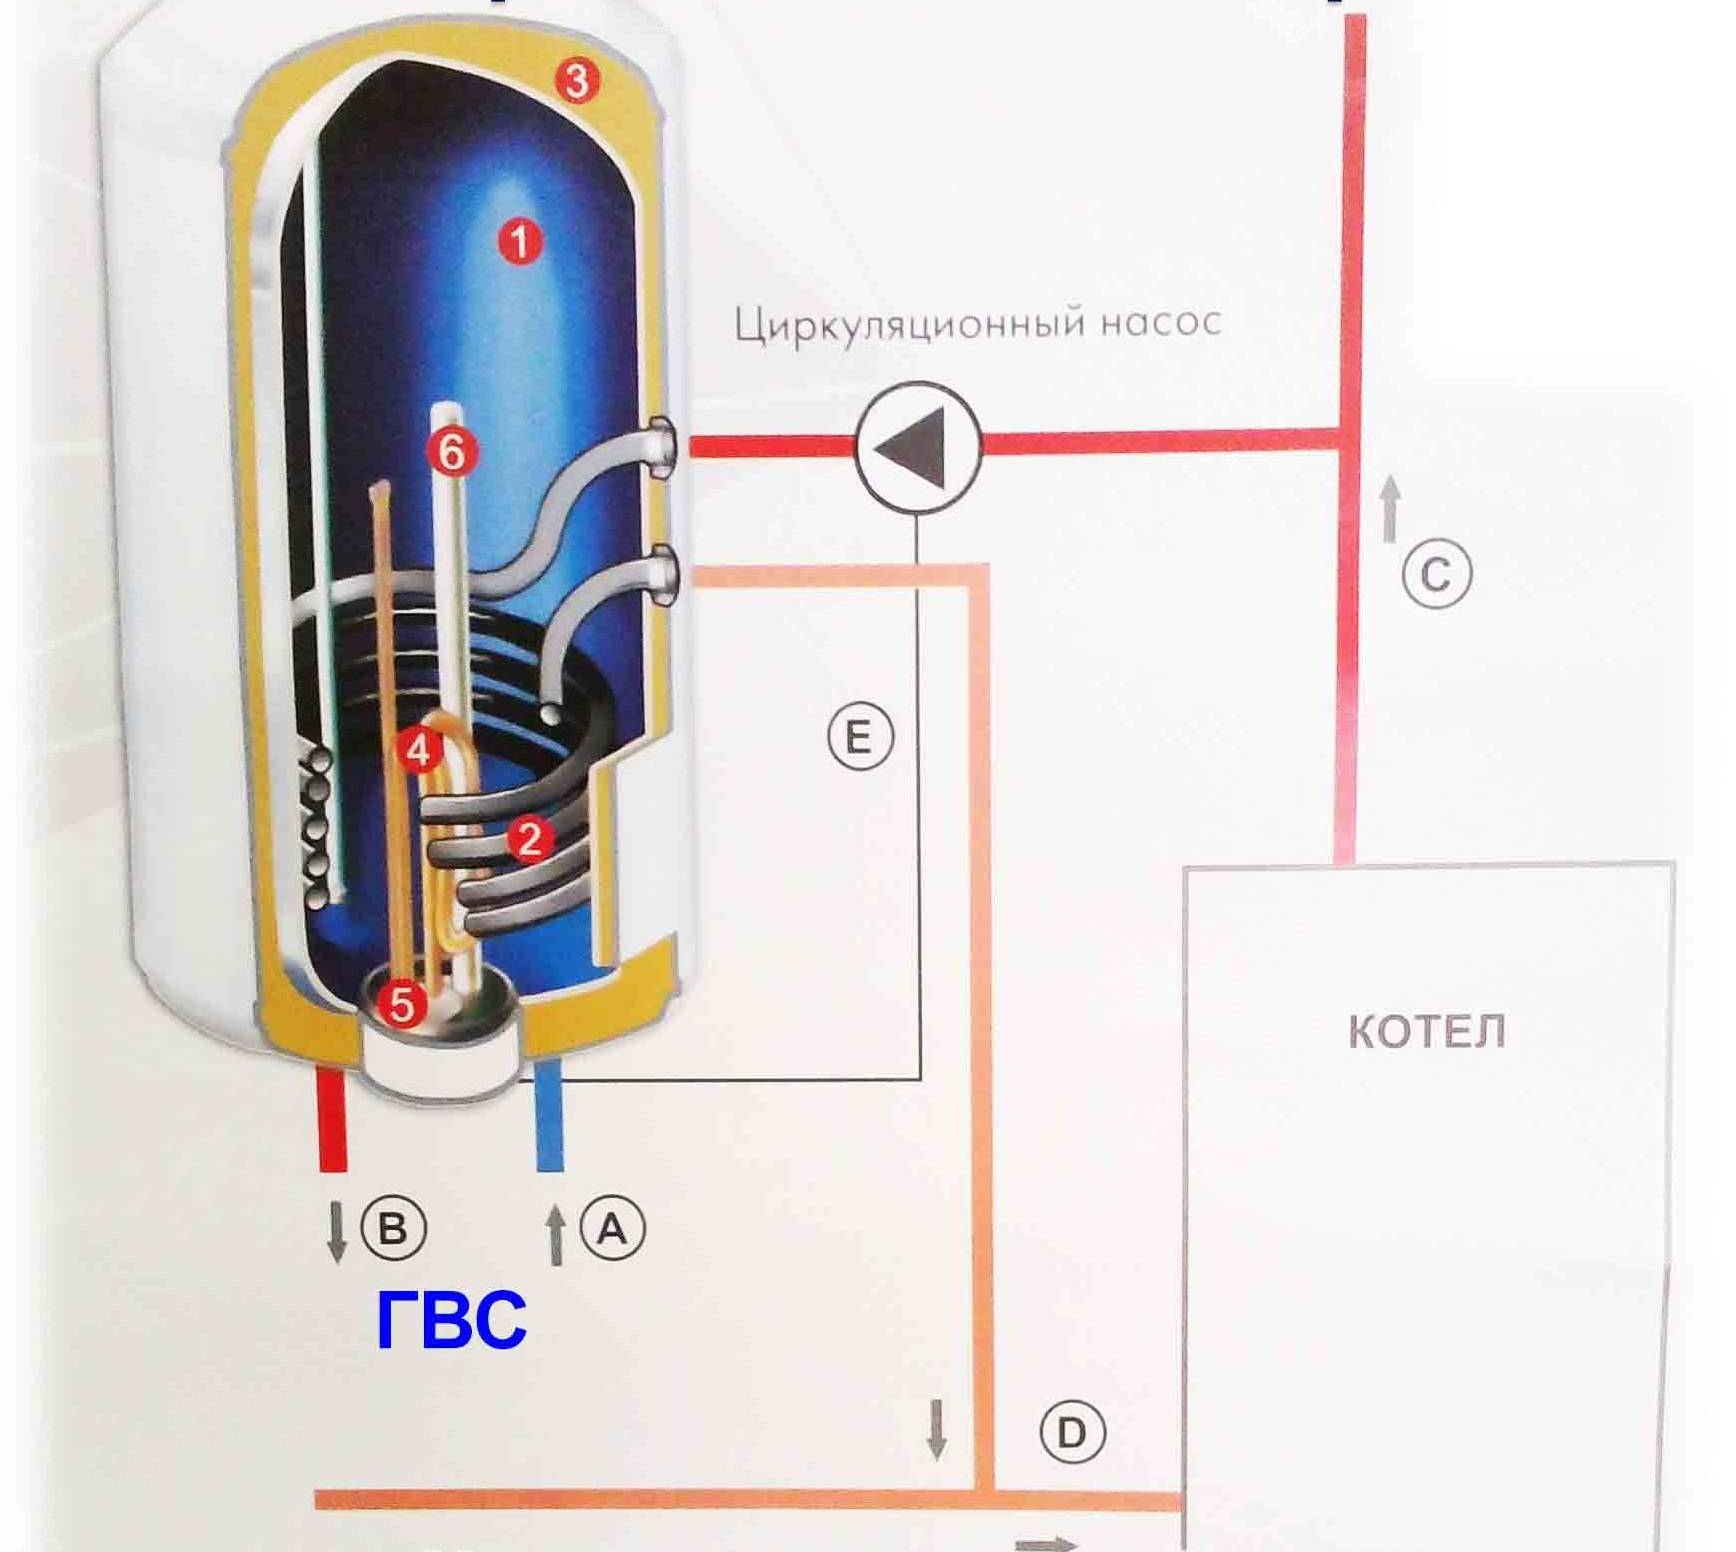 Бойлер для отопления частного дома, какой лучше: газовый или электробойлер, фото и видео инструкции